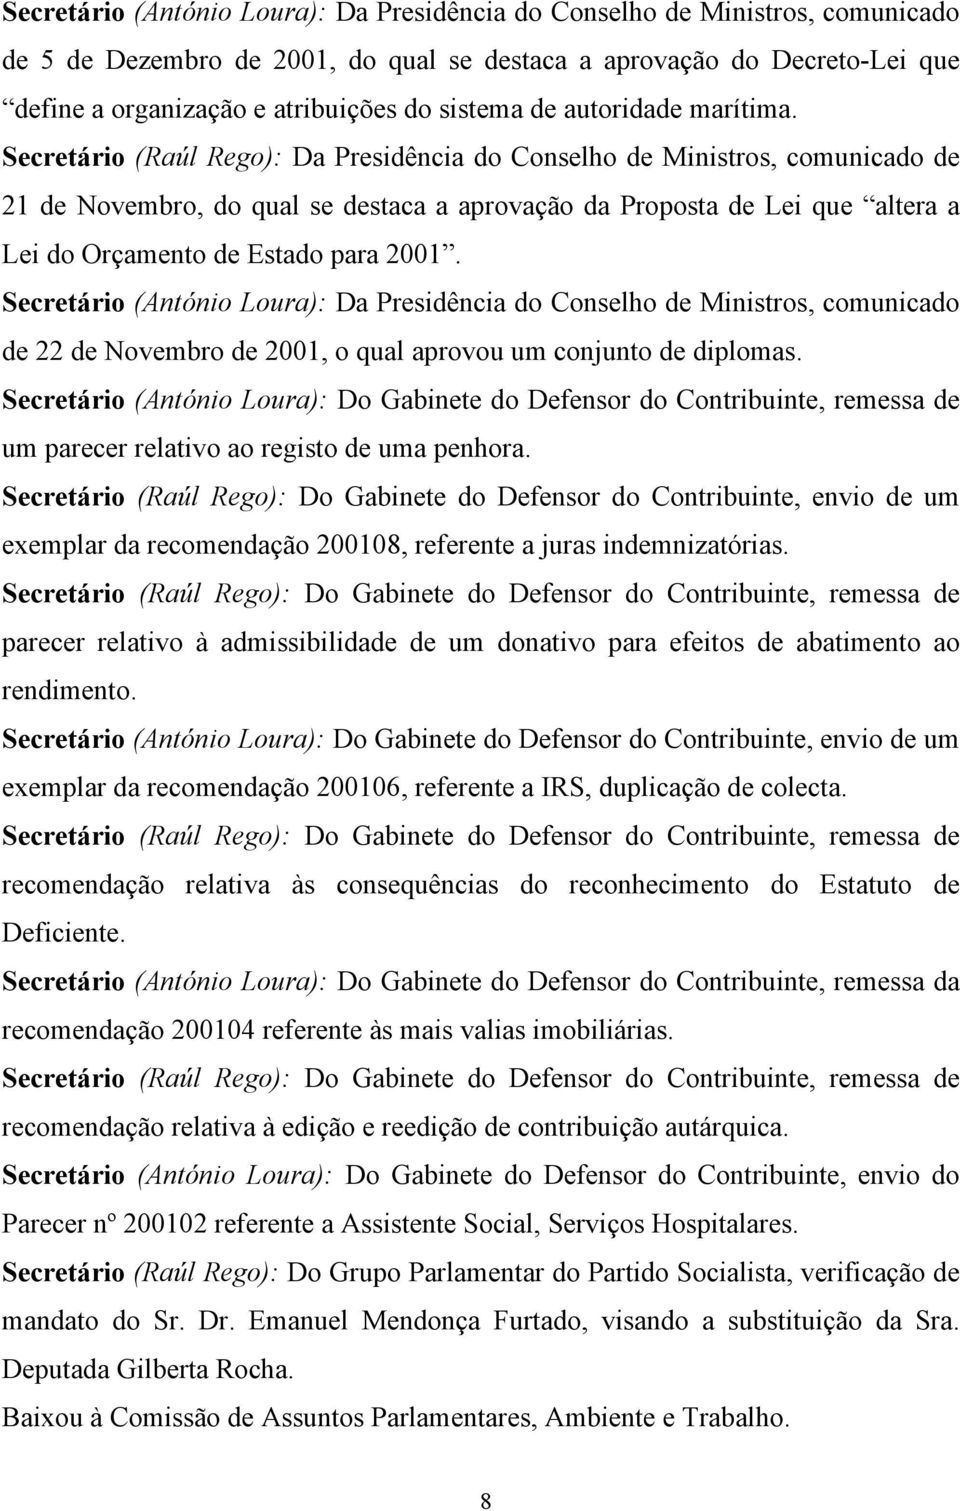 Secretário (Raúl Rego): Da Presidência do Conselho de Ministros, comunicado de 21 de Novembro, do qual se destaca a aprovação da Proposta de Lei que altera a Lei do Orçamento de Estado para 2001.